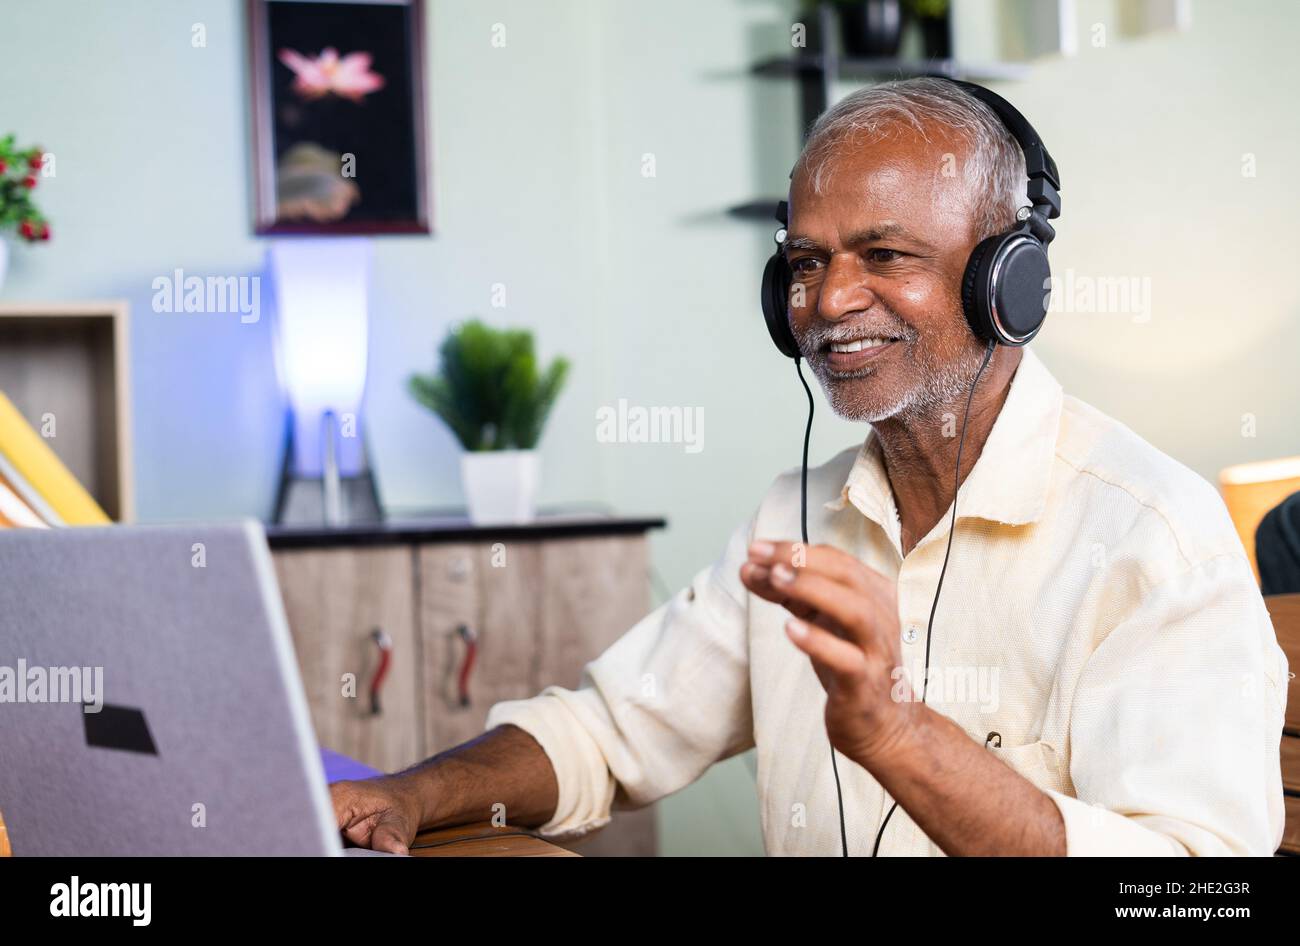 Der alte Mann genießt es, sich zu Hause Musikvideos auf dem Laptop anzusehen - Konzept aktiver Senioren, fröhlicher und gesunder Lebensstil im Ruhestand. Stockfoto